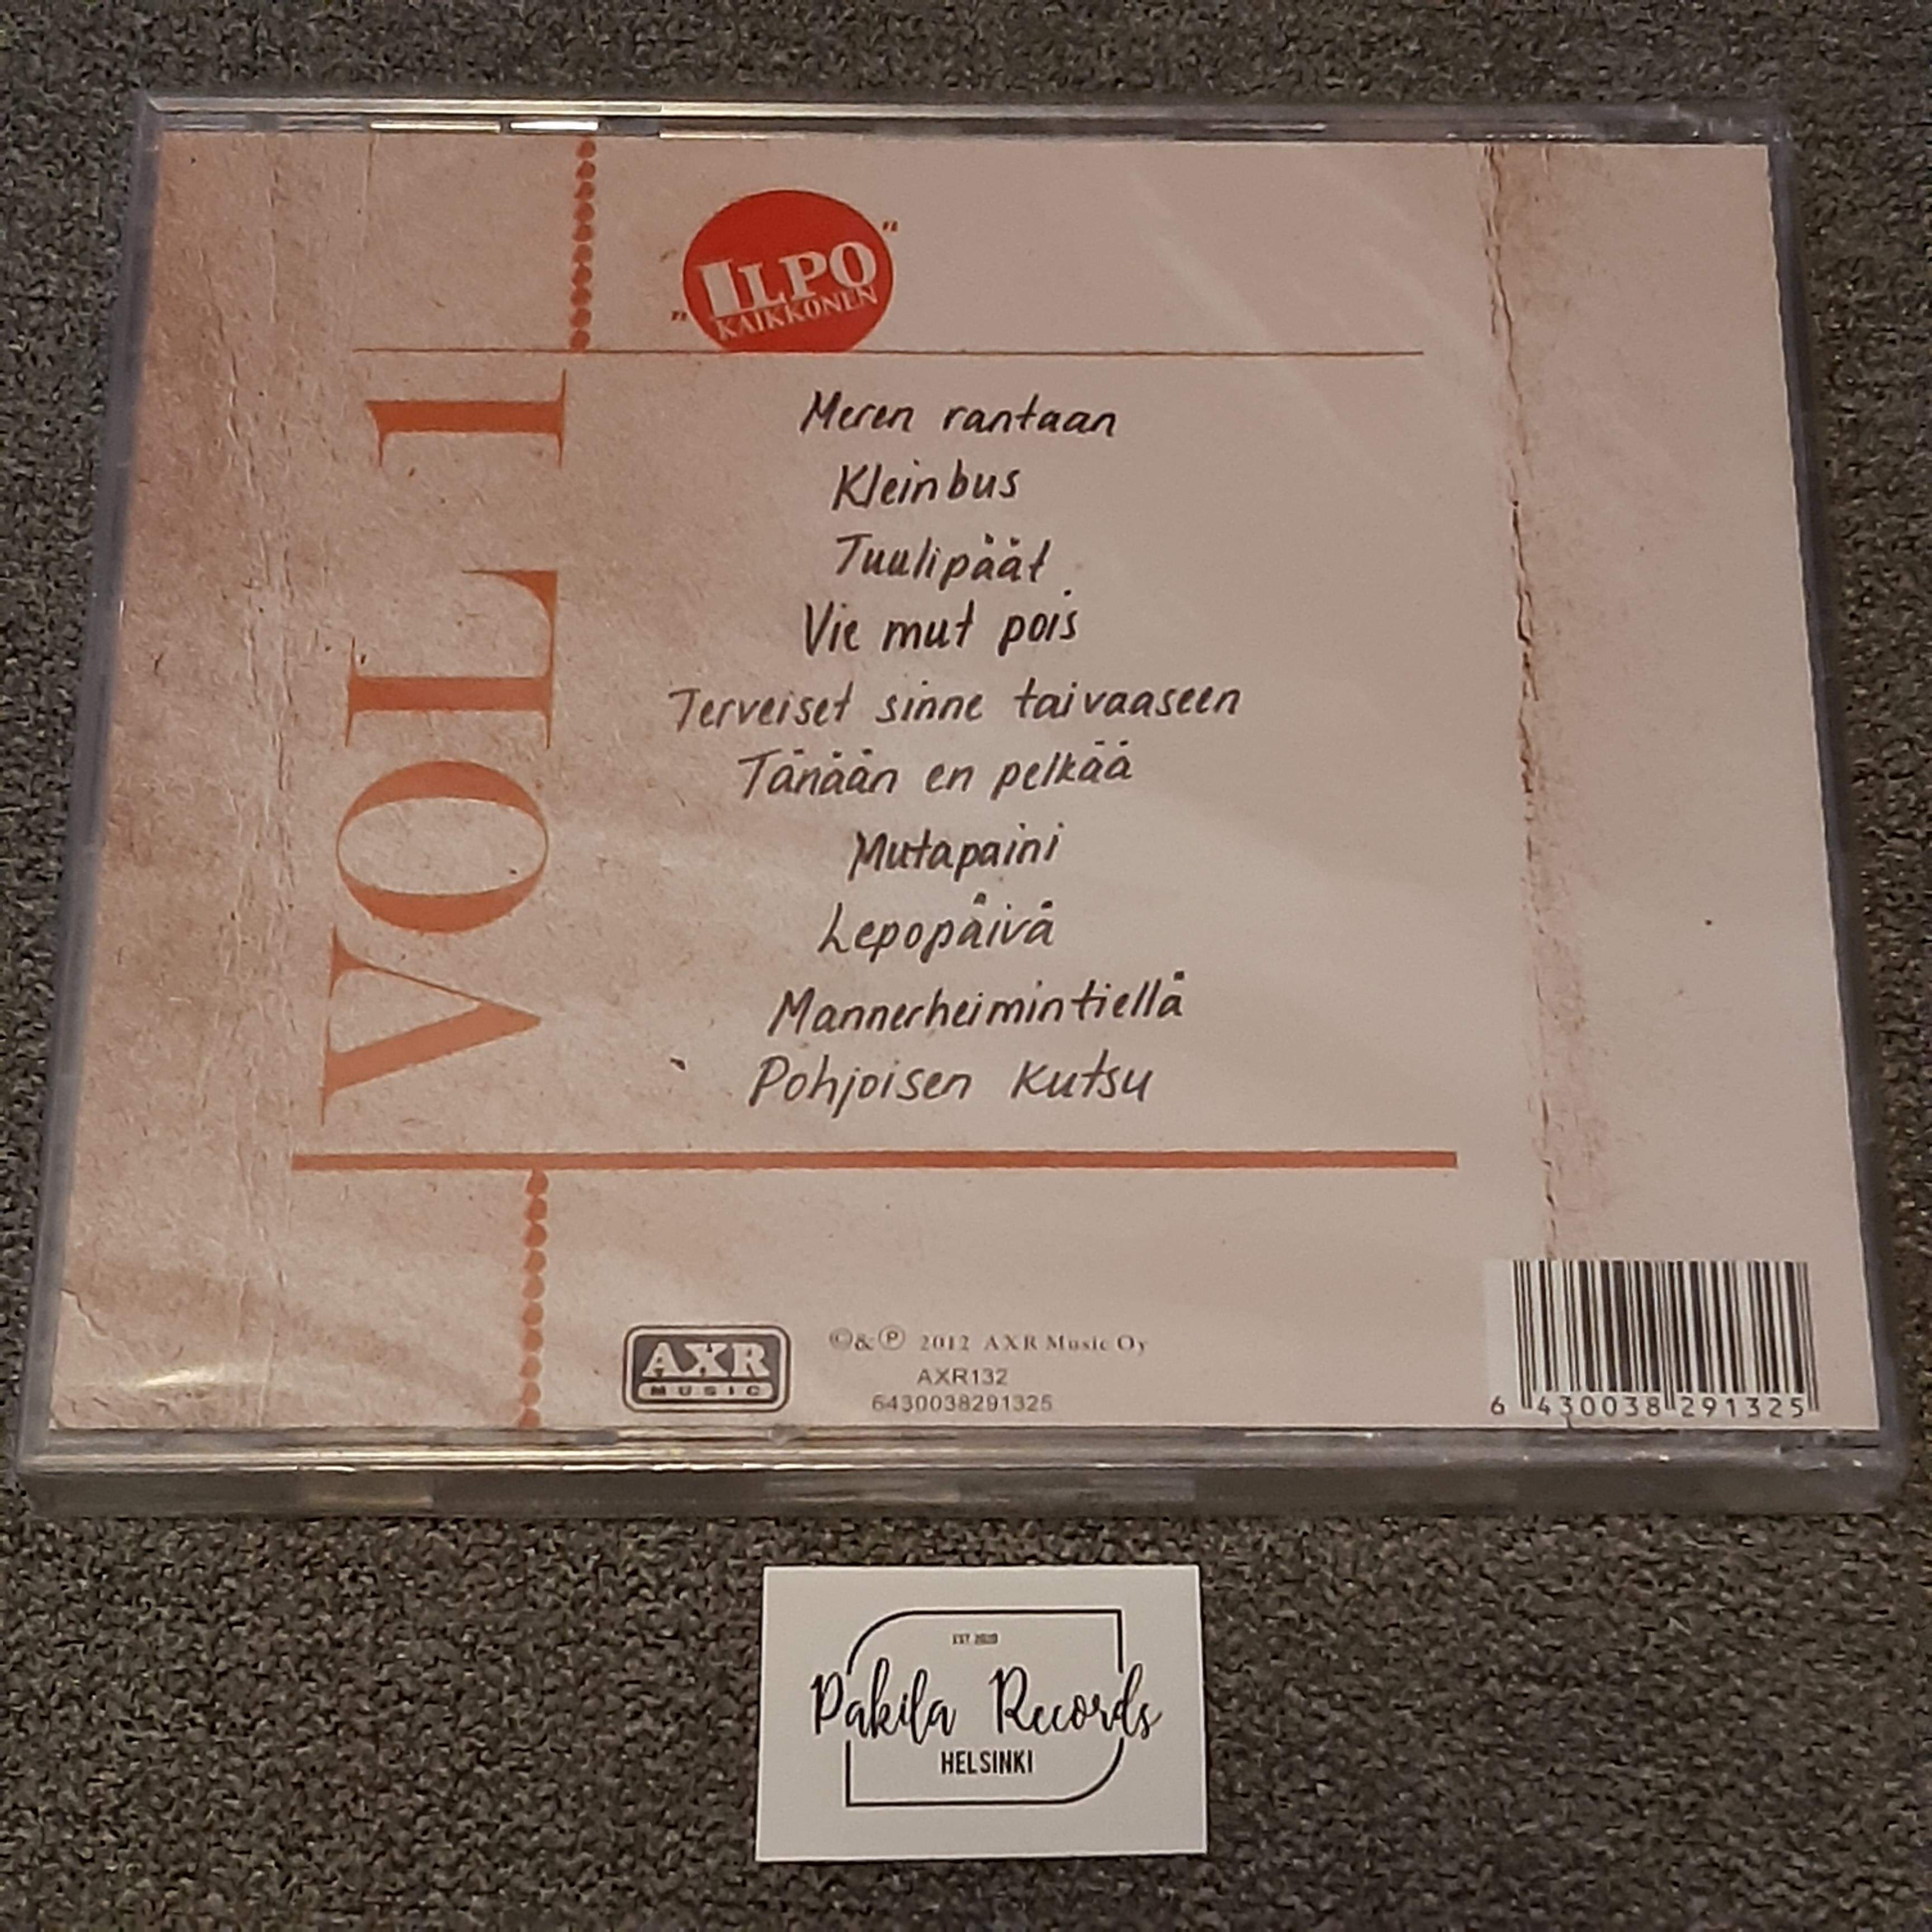 Ilpo Kaikkonen - Vol 1 - CD (uusi)